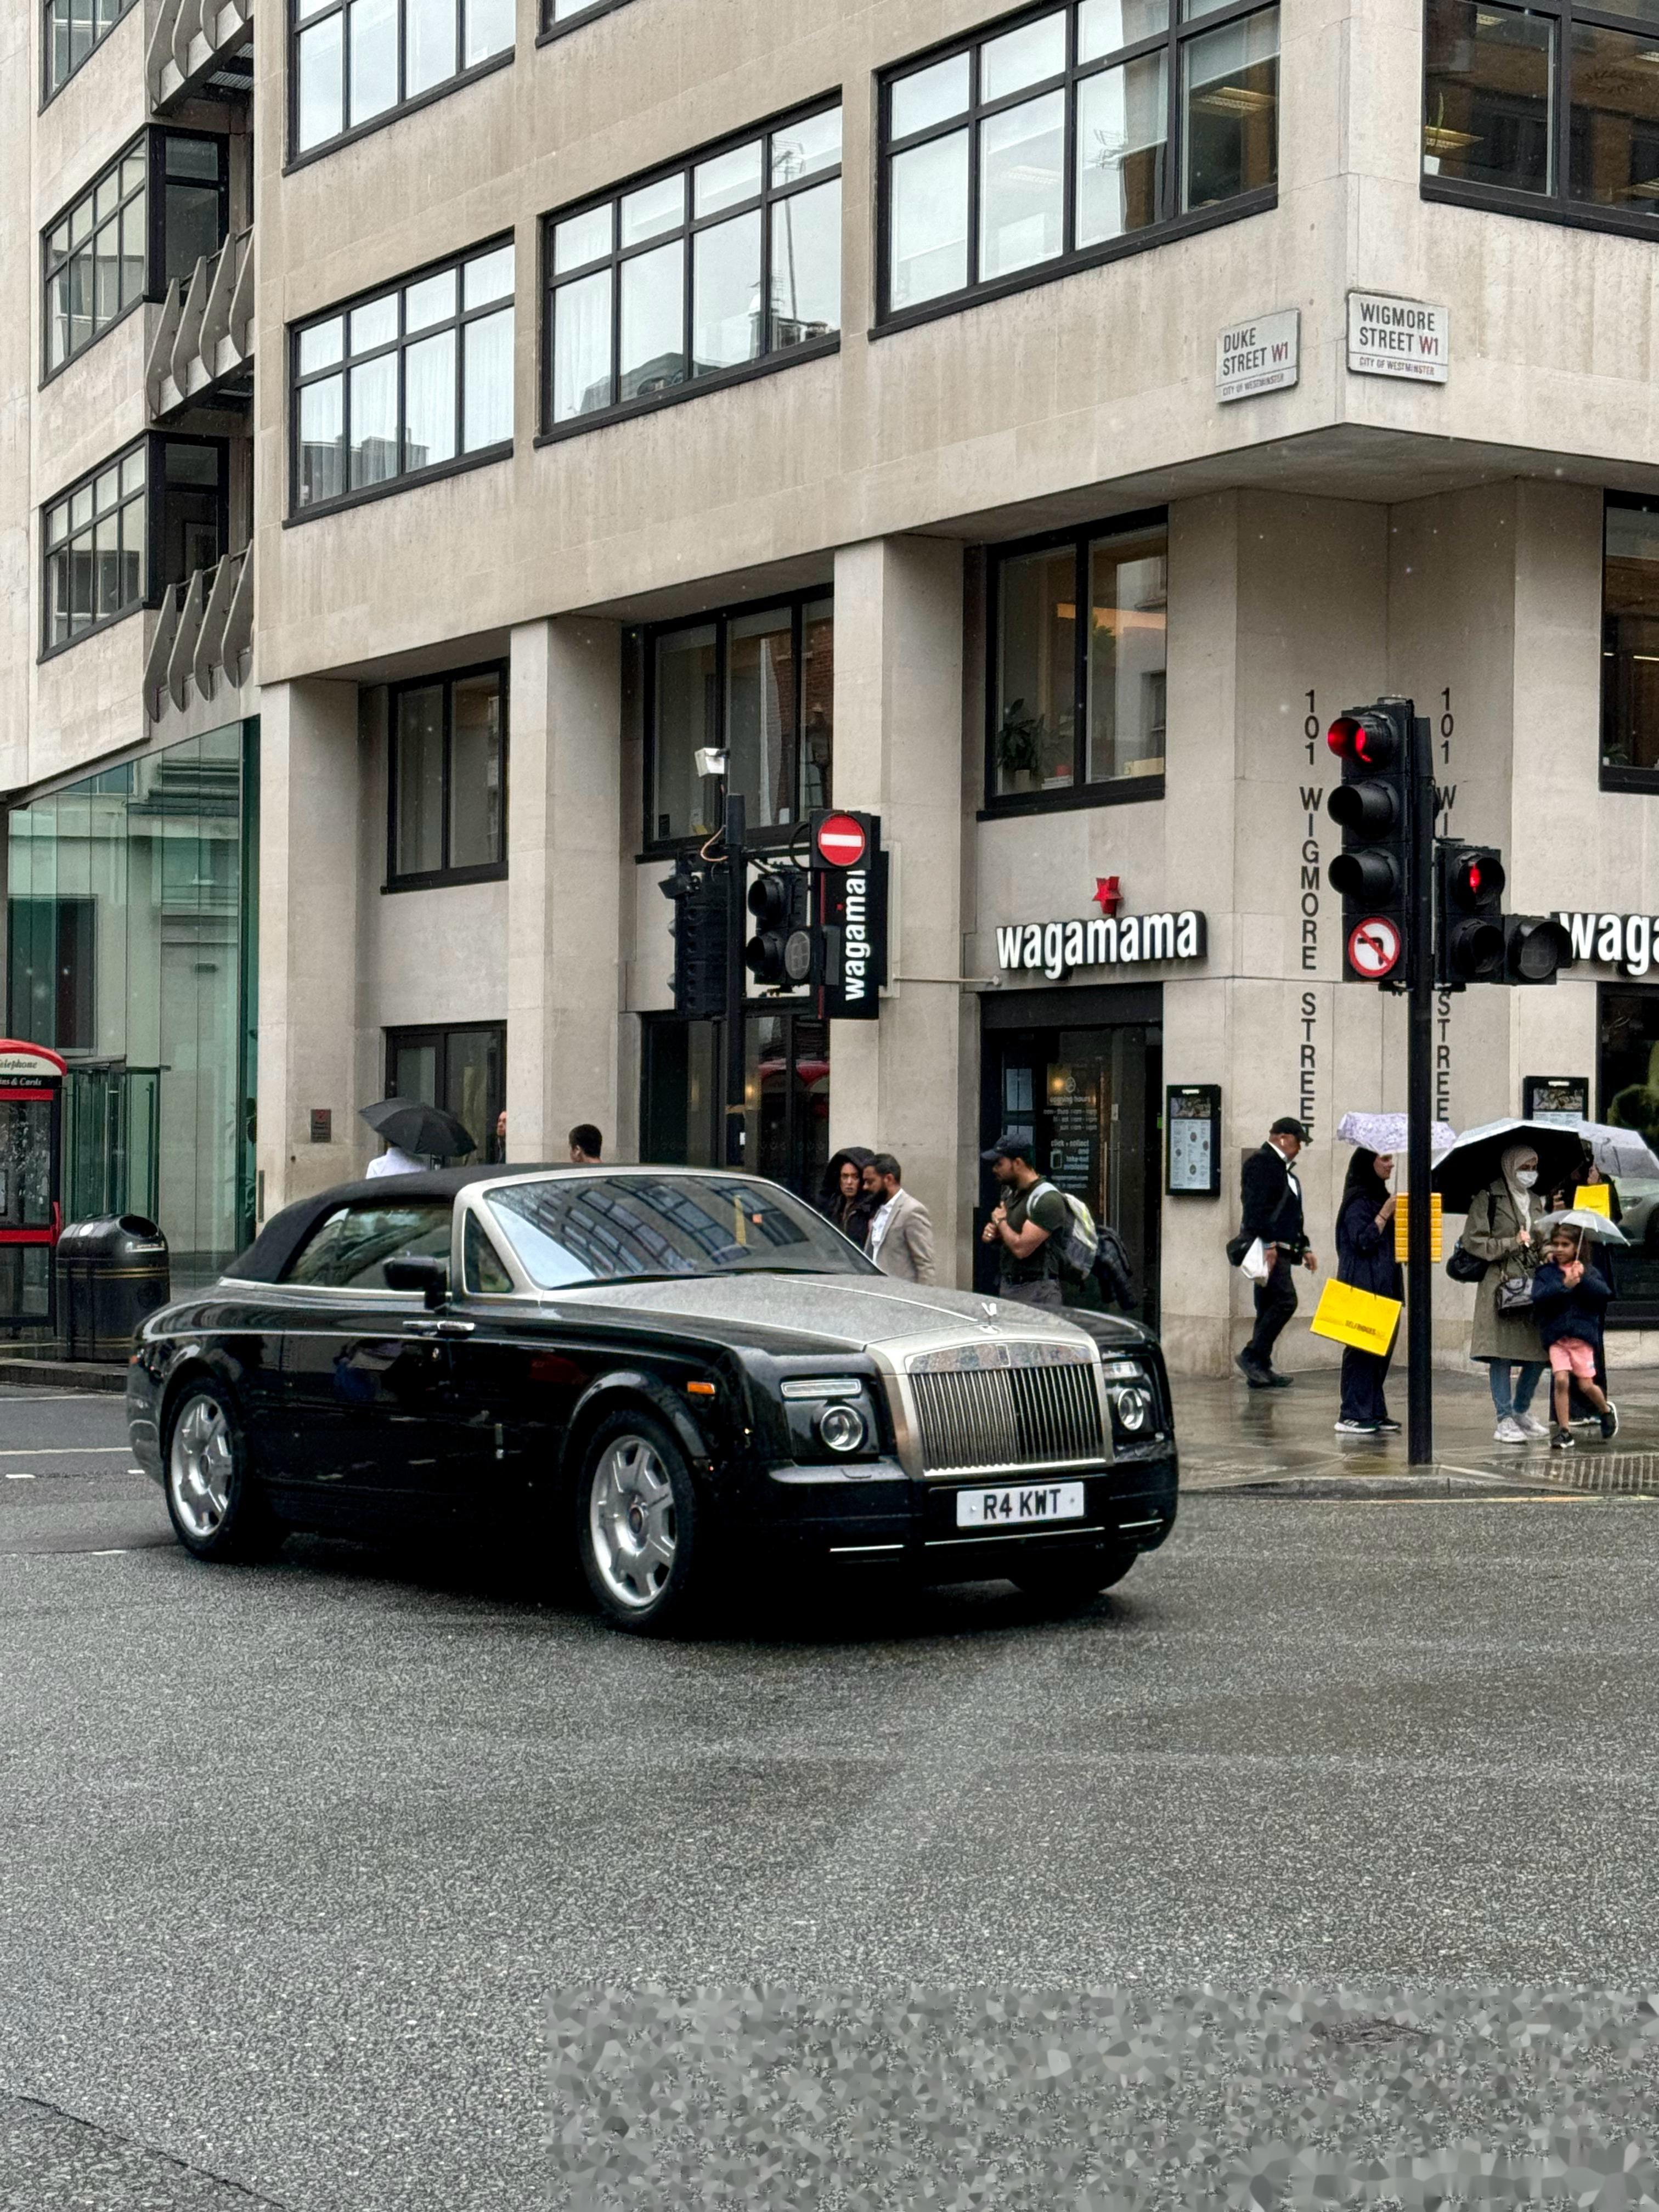 伦敦街头还是得国产车,就是这国产车比较贵街景和车太配了